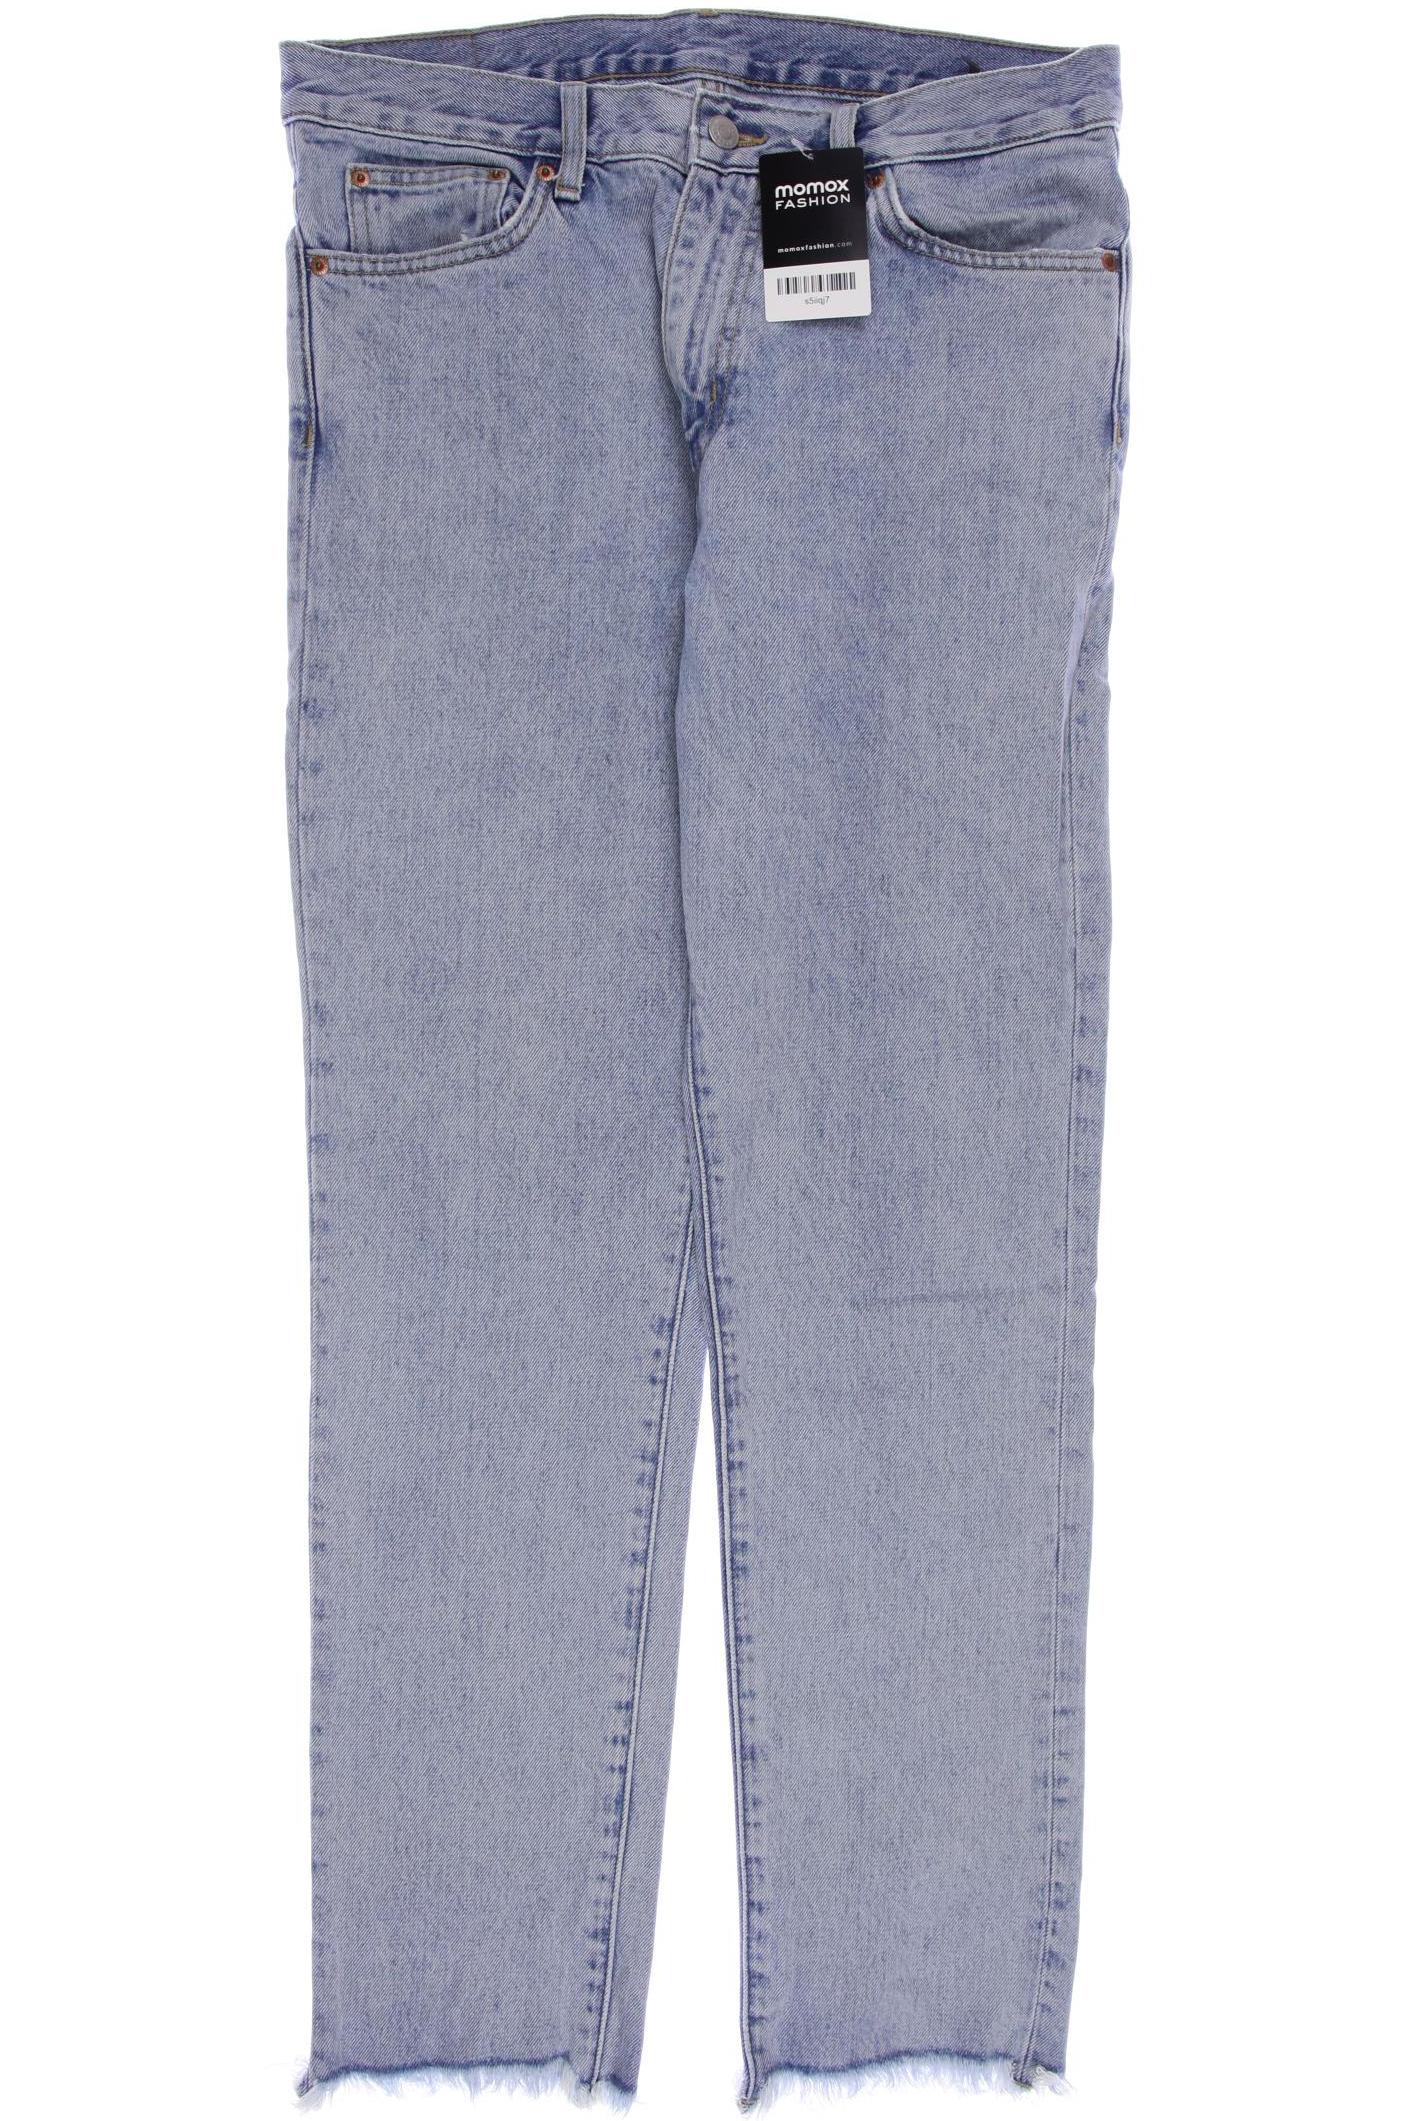 Weekday Herren Jeans, blau, Gr. 46 von Weekday